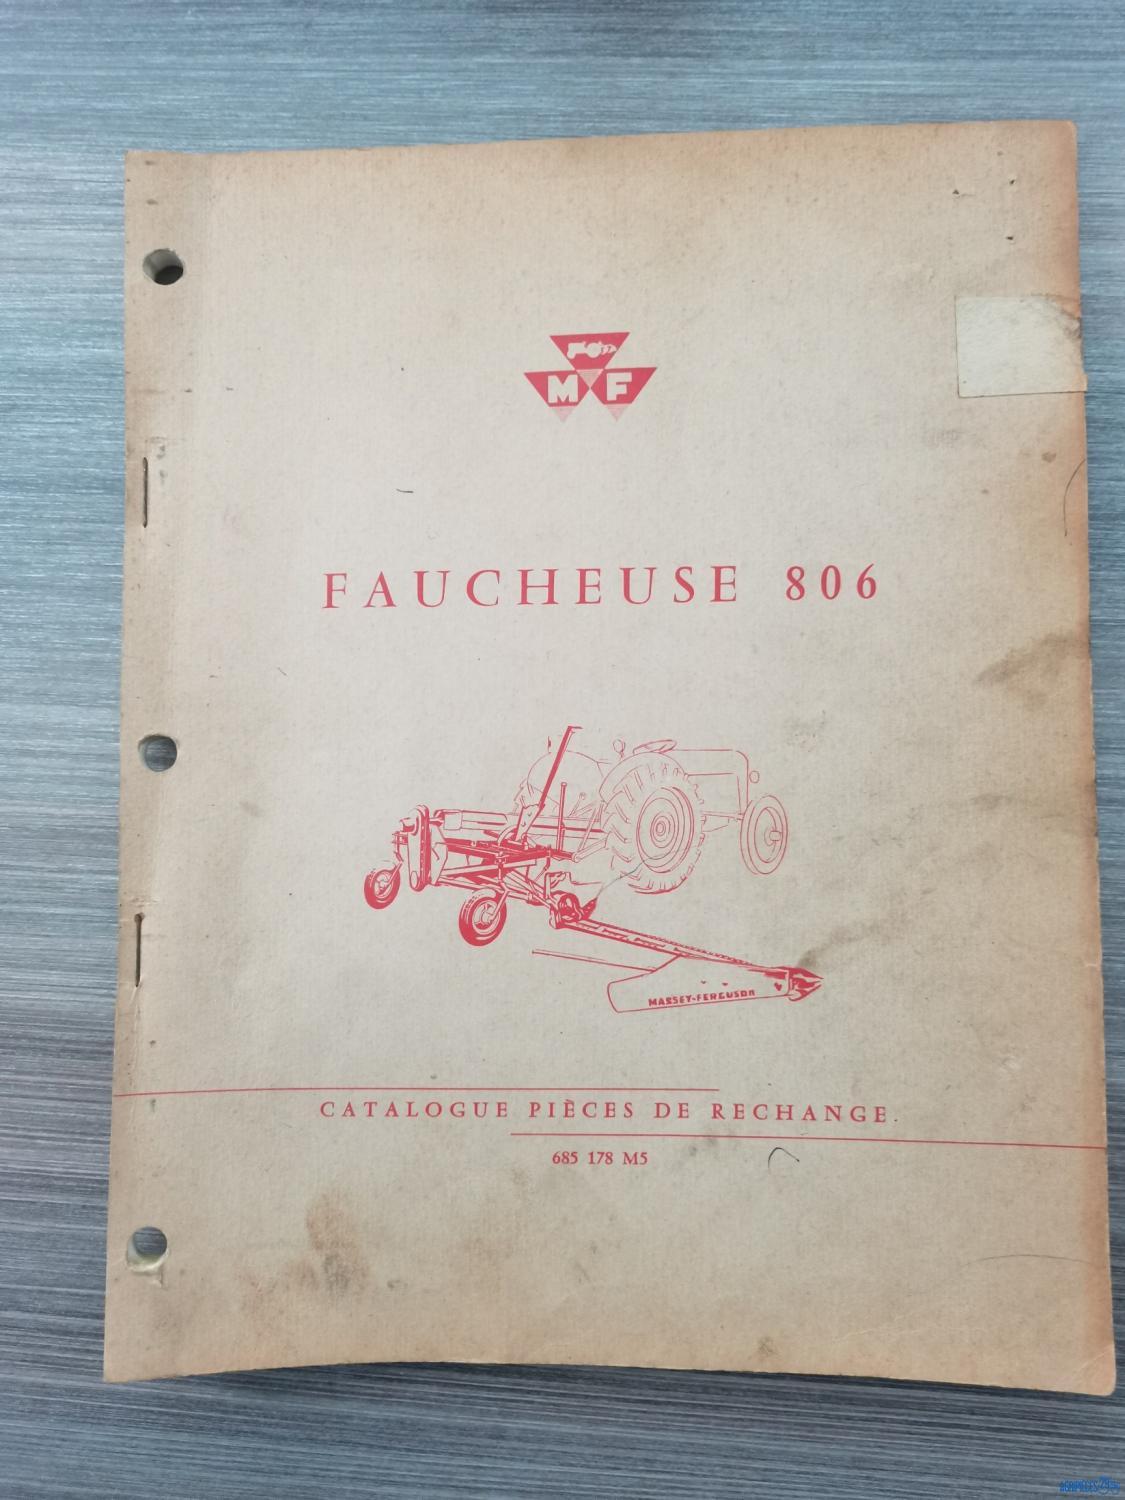 Catalogue de pièces détachées pour faucheuse Massey-Ferguson 806